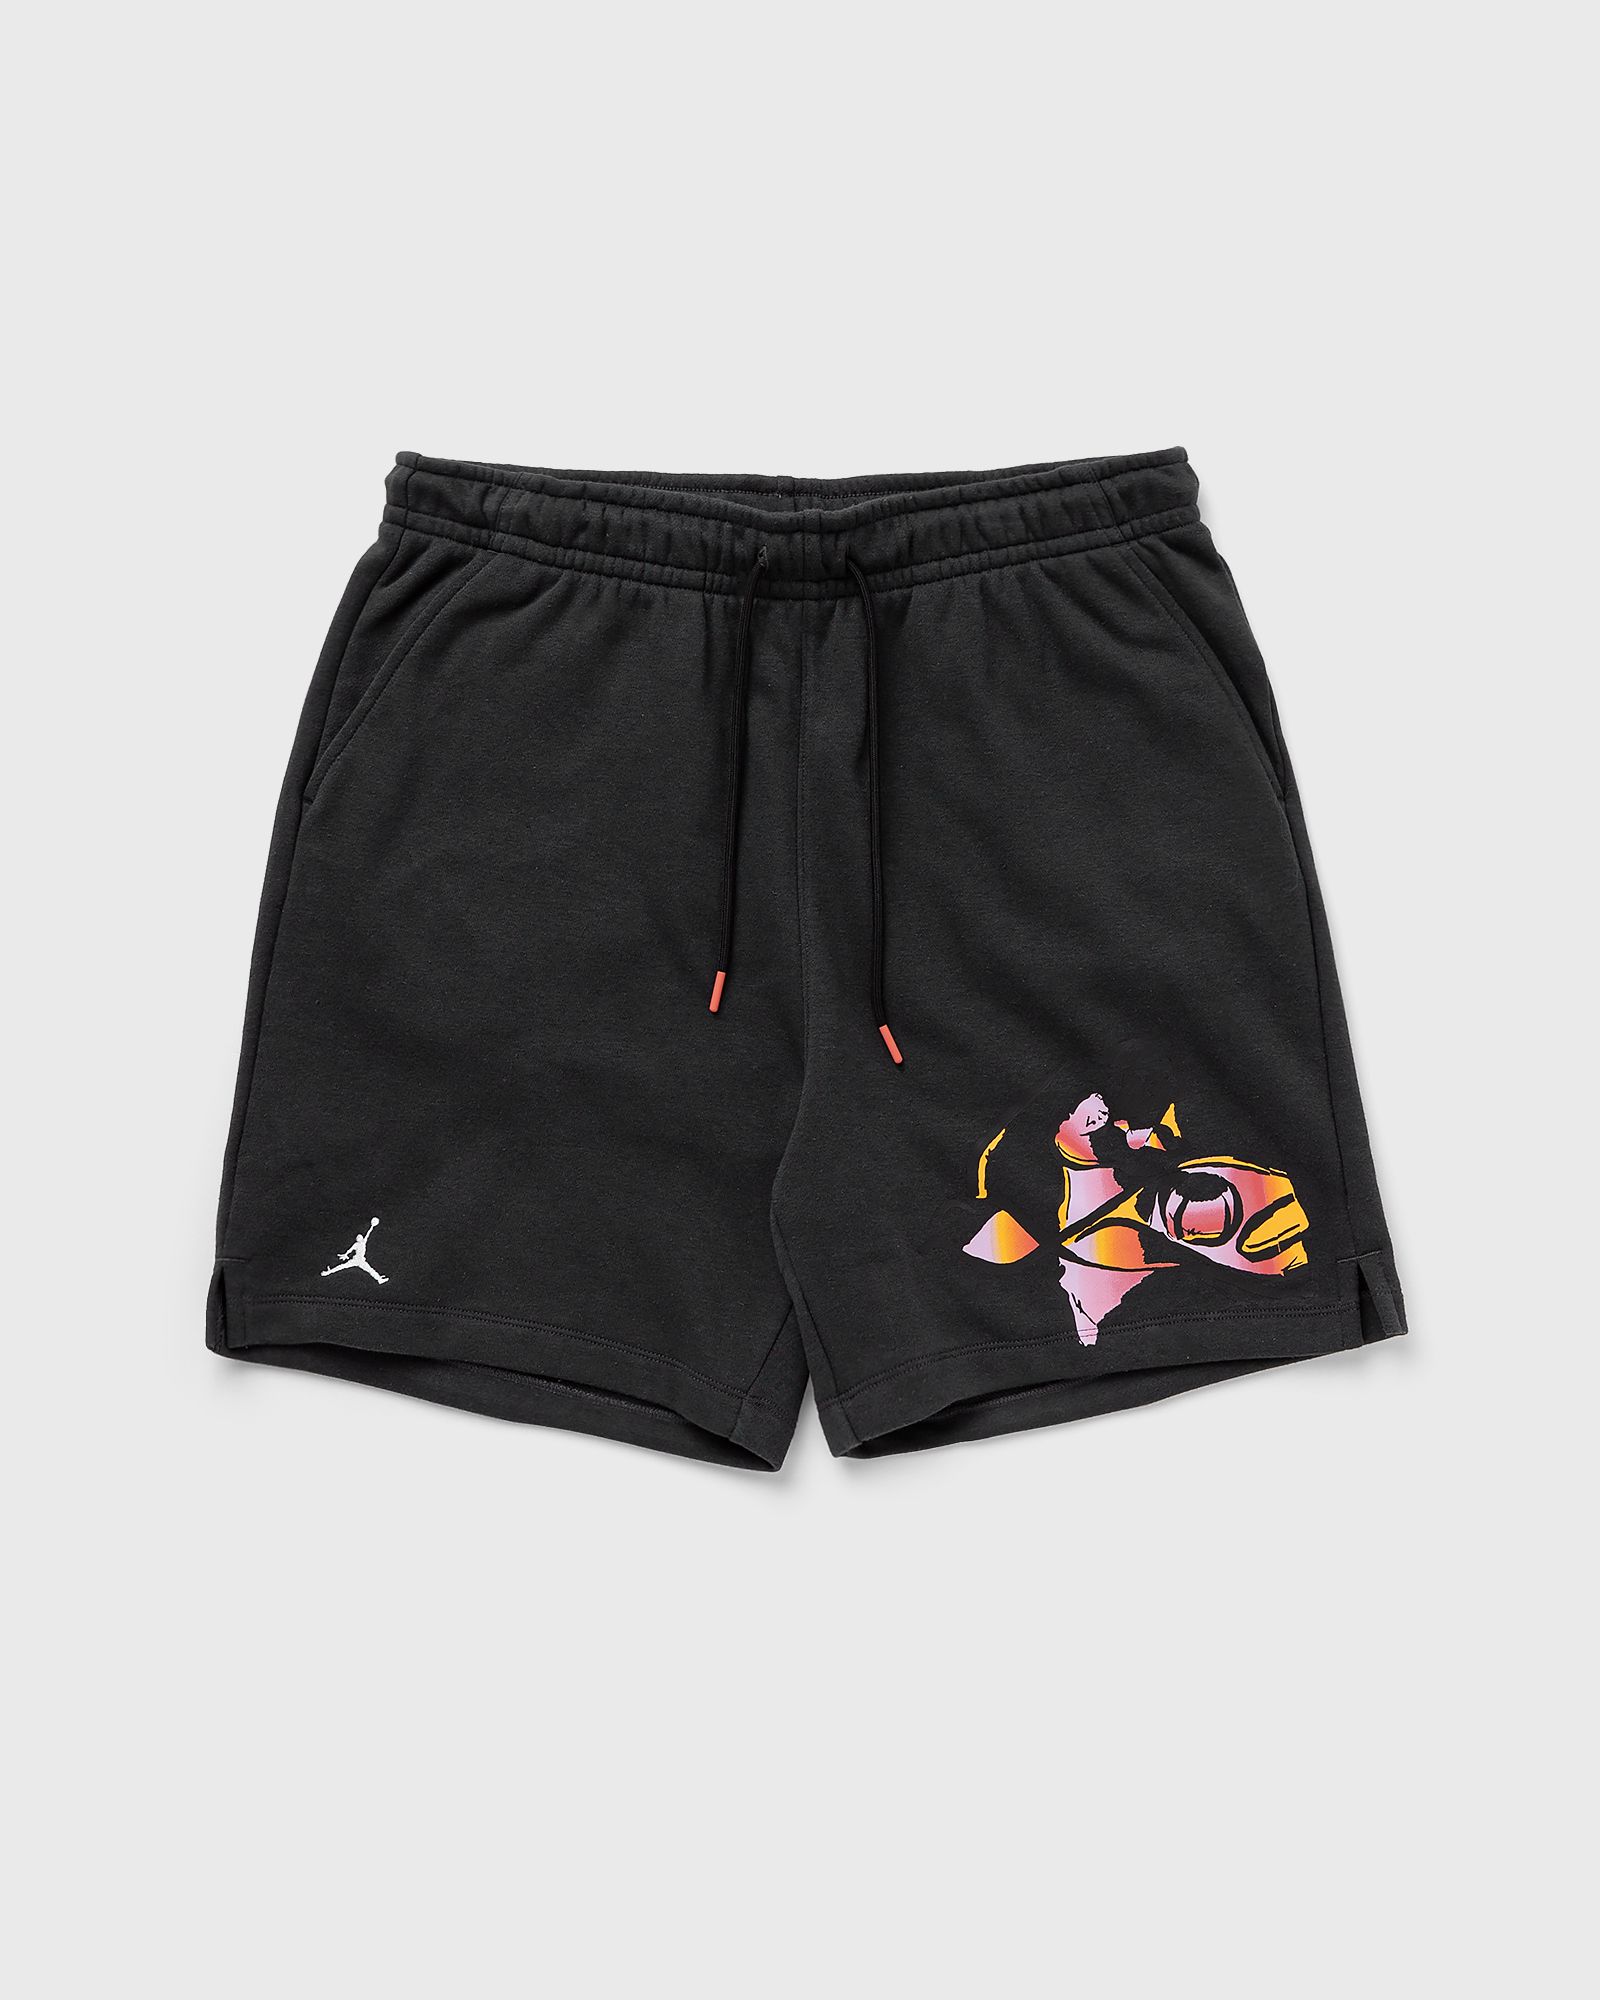 Jordan - flight mvp fleece shorts men sport & team shorts black in größe:l